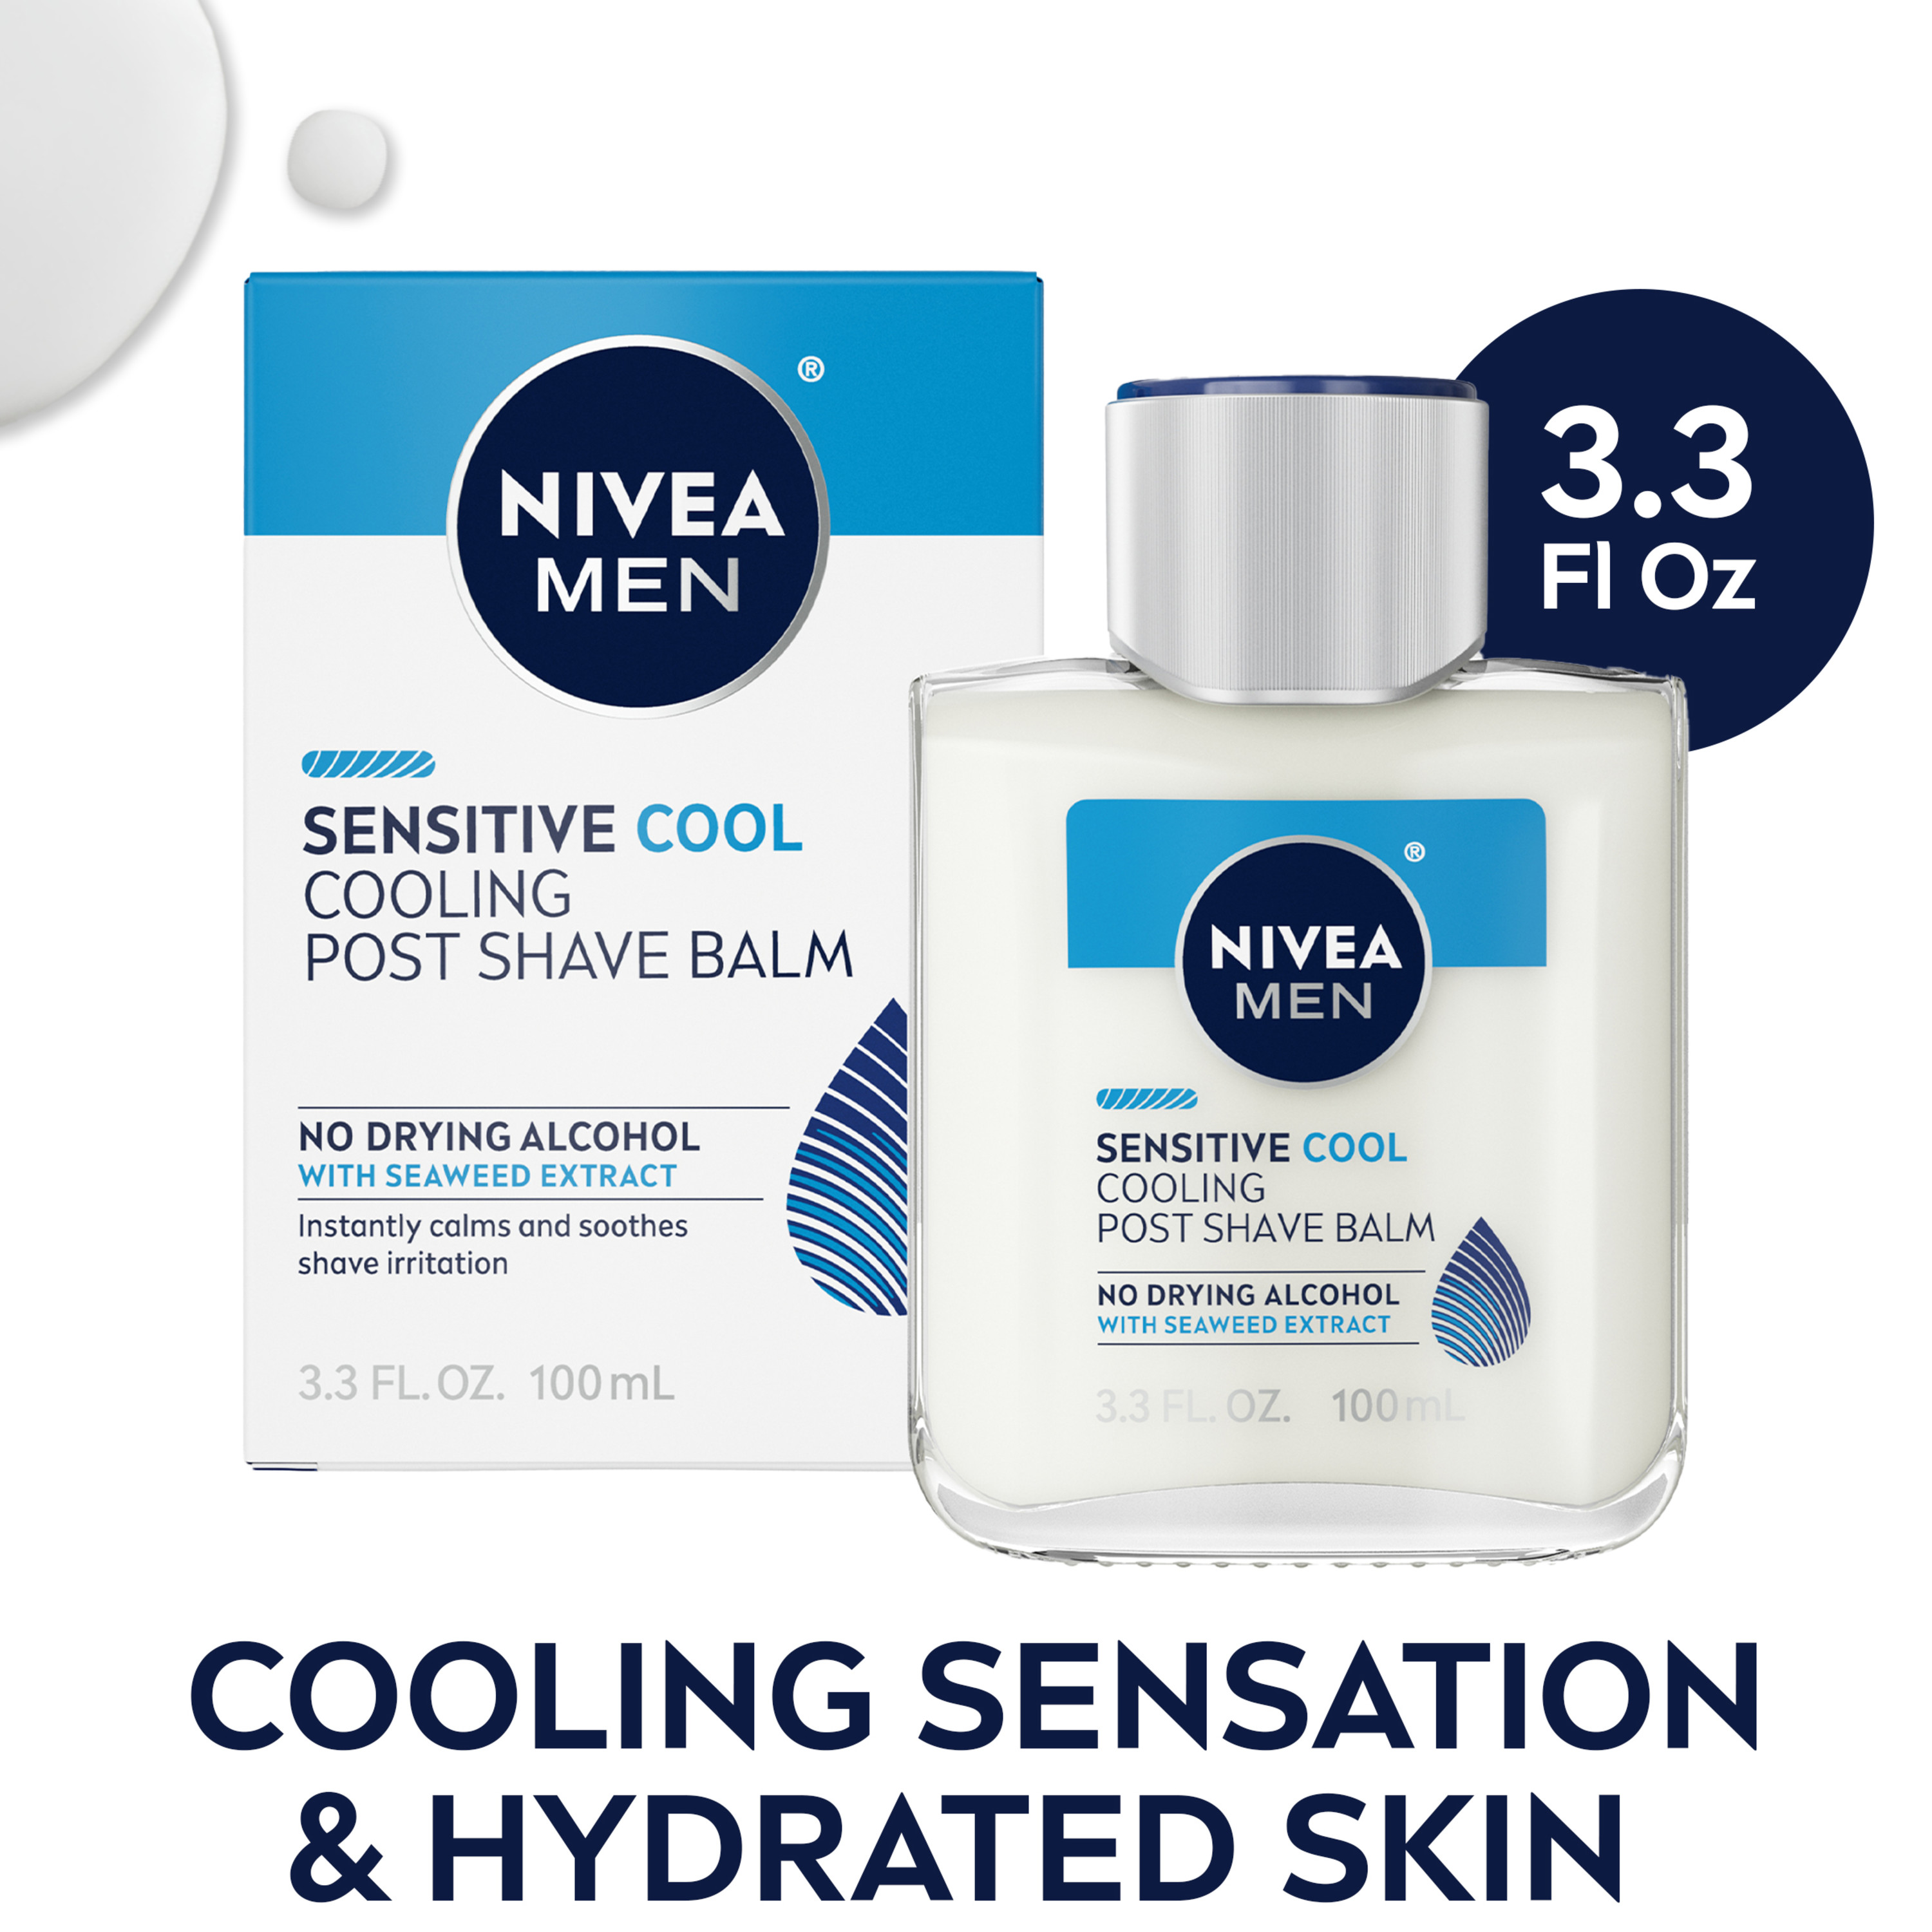 NIVEA MEN Sensitive Cooling Post Shave Balm, 3.3 Fl Oz Bottle - image 1 of 13